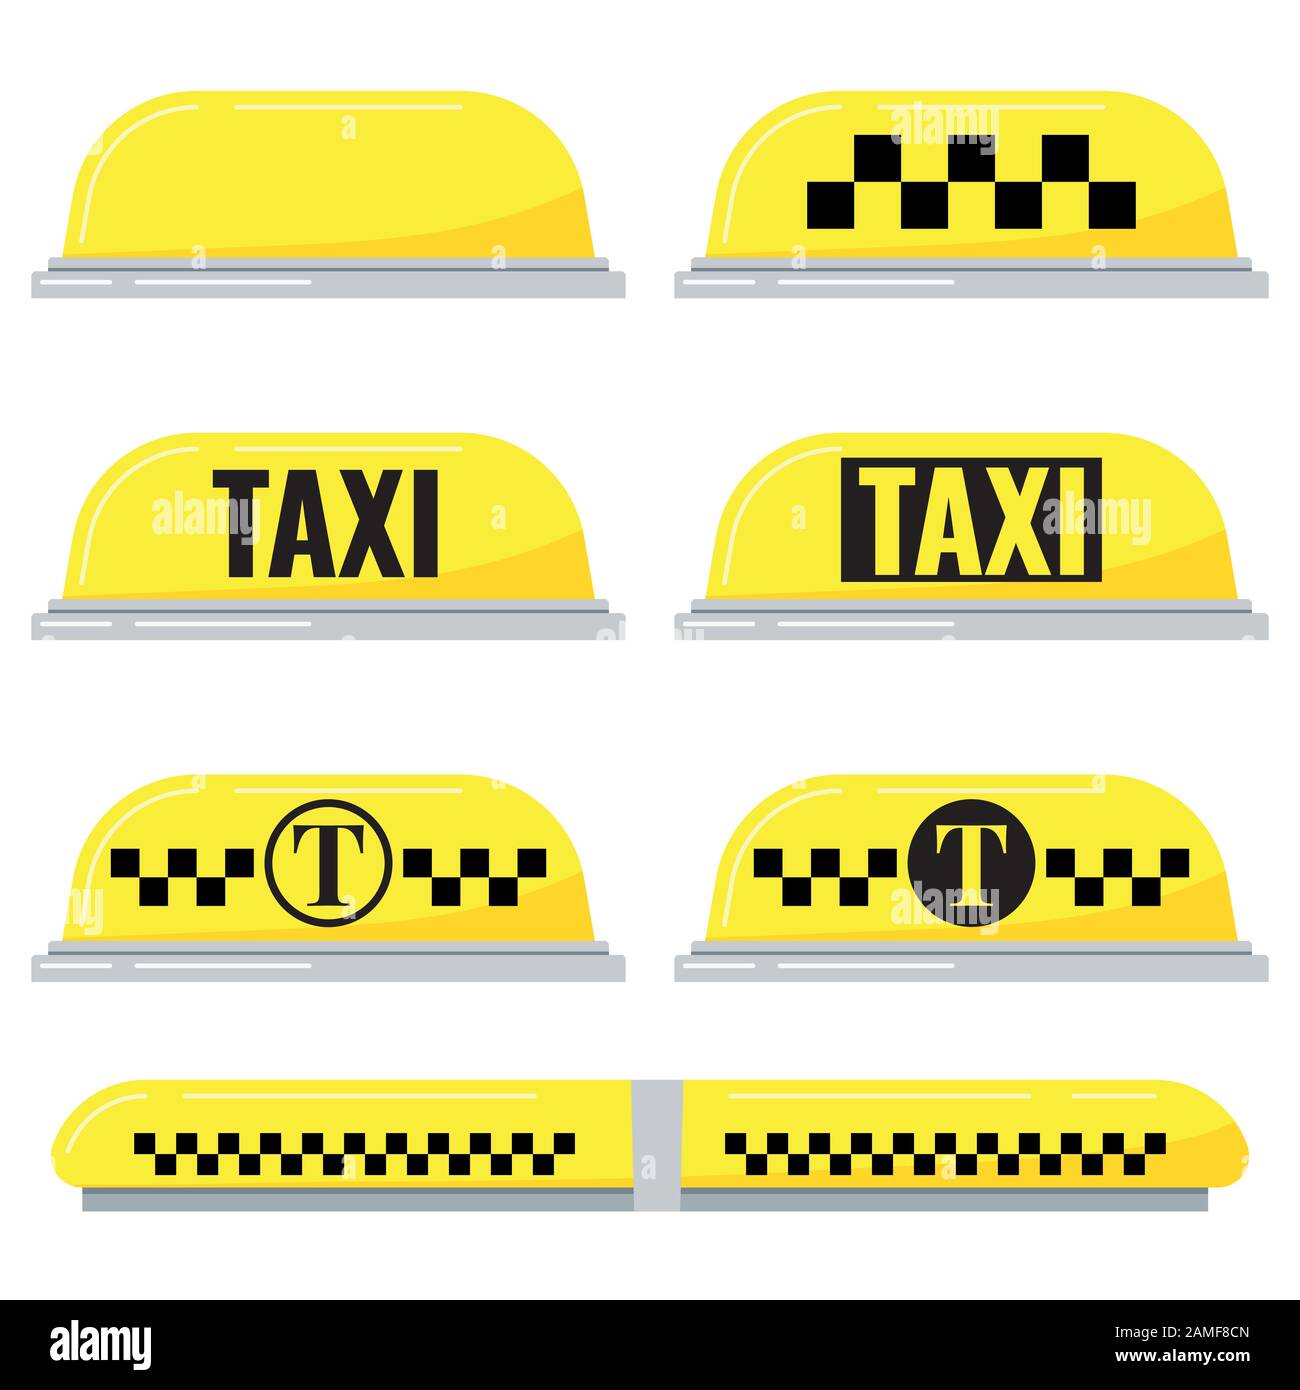 Taxischild Stock-Vektorgrafik von ©julydfg 71297637